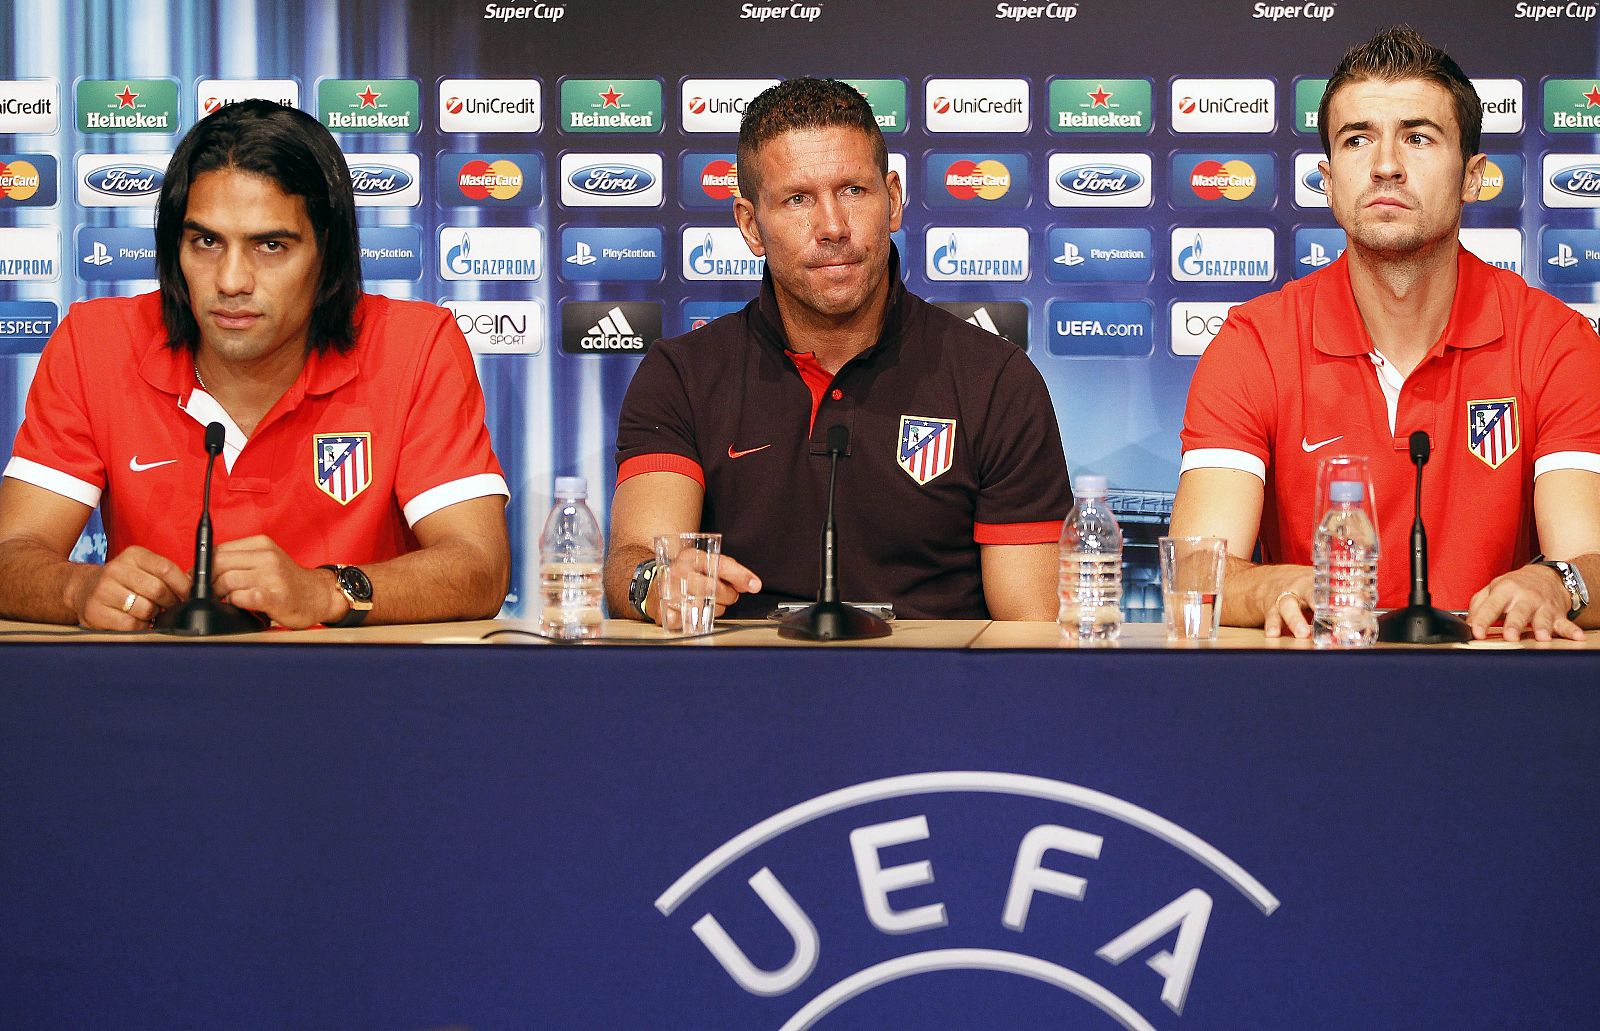 Simeone ofrece una rueda de prensa junto a sus jugadores Radamel Falcao (izq) y Gabi (der) en Mónaco.